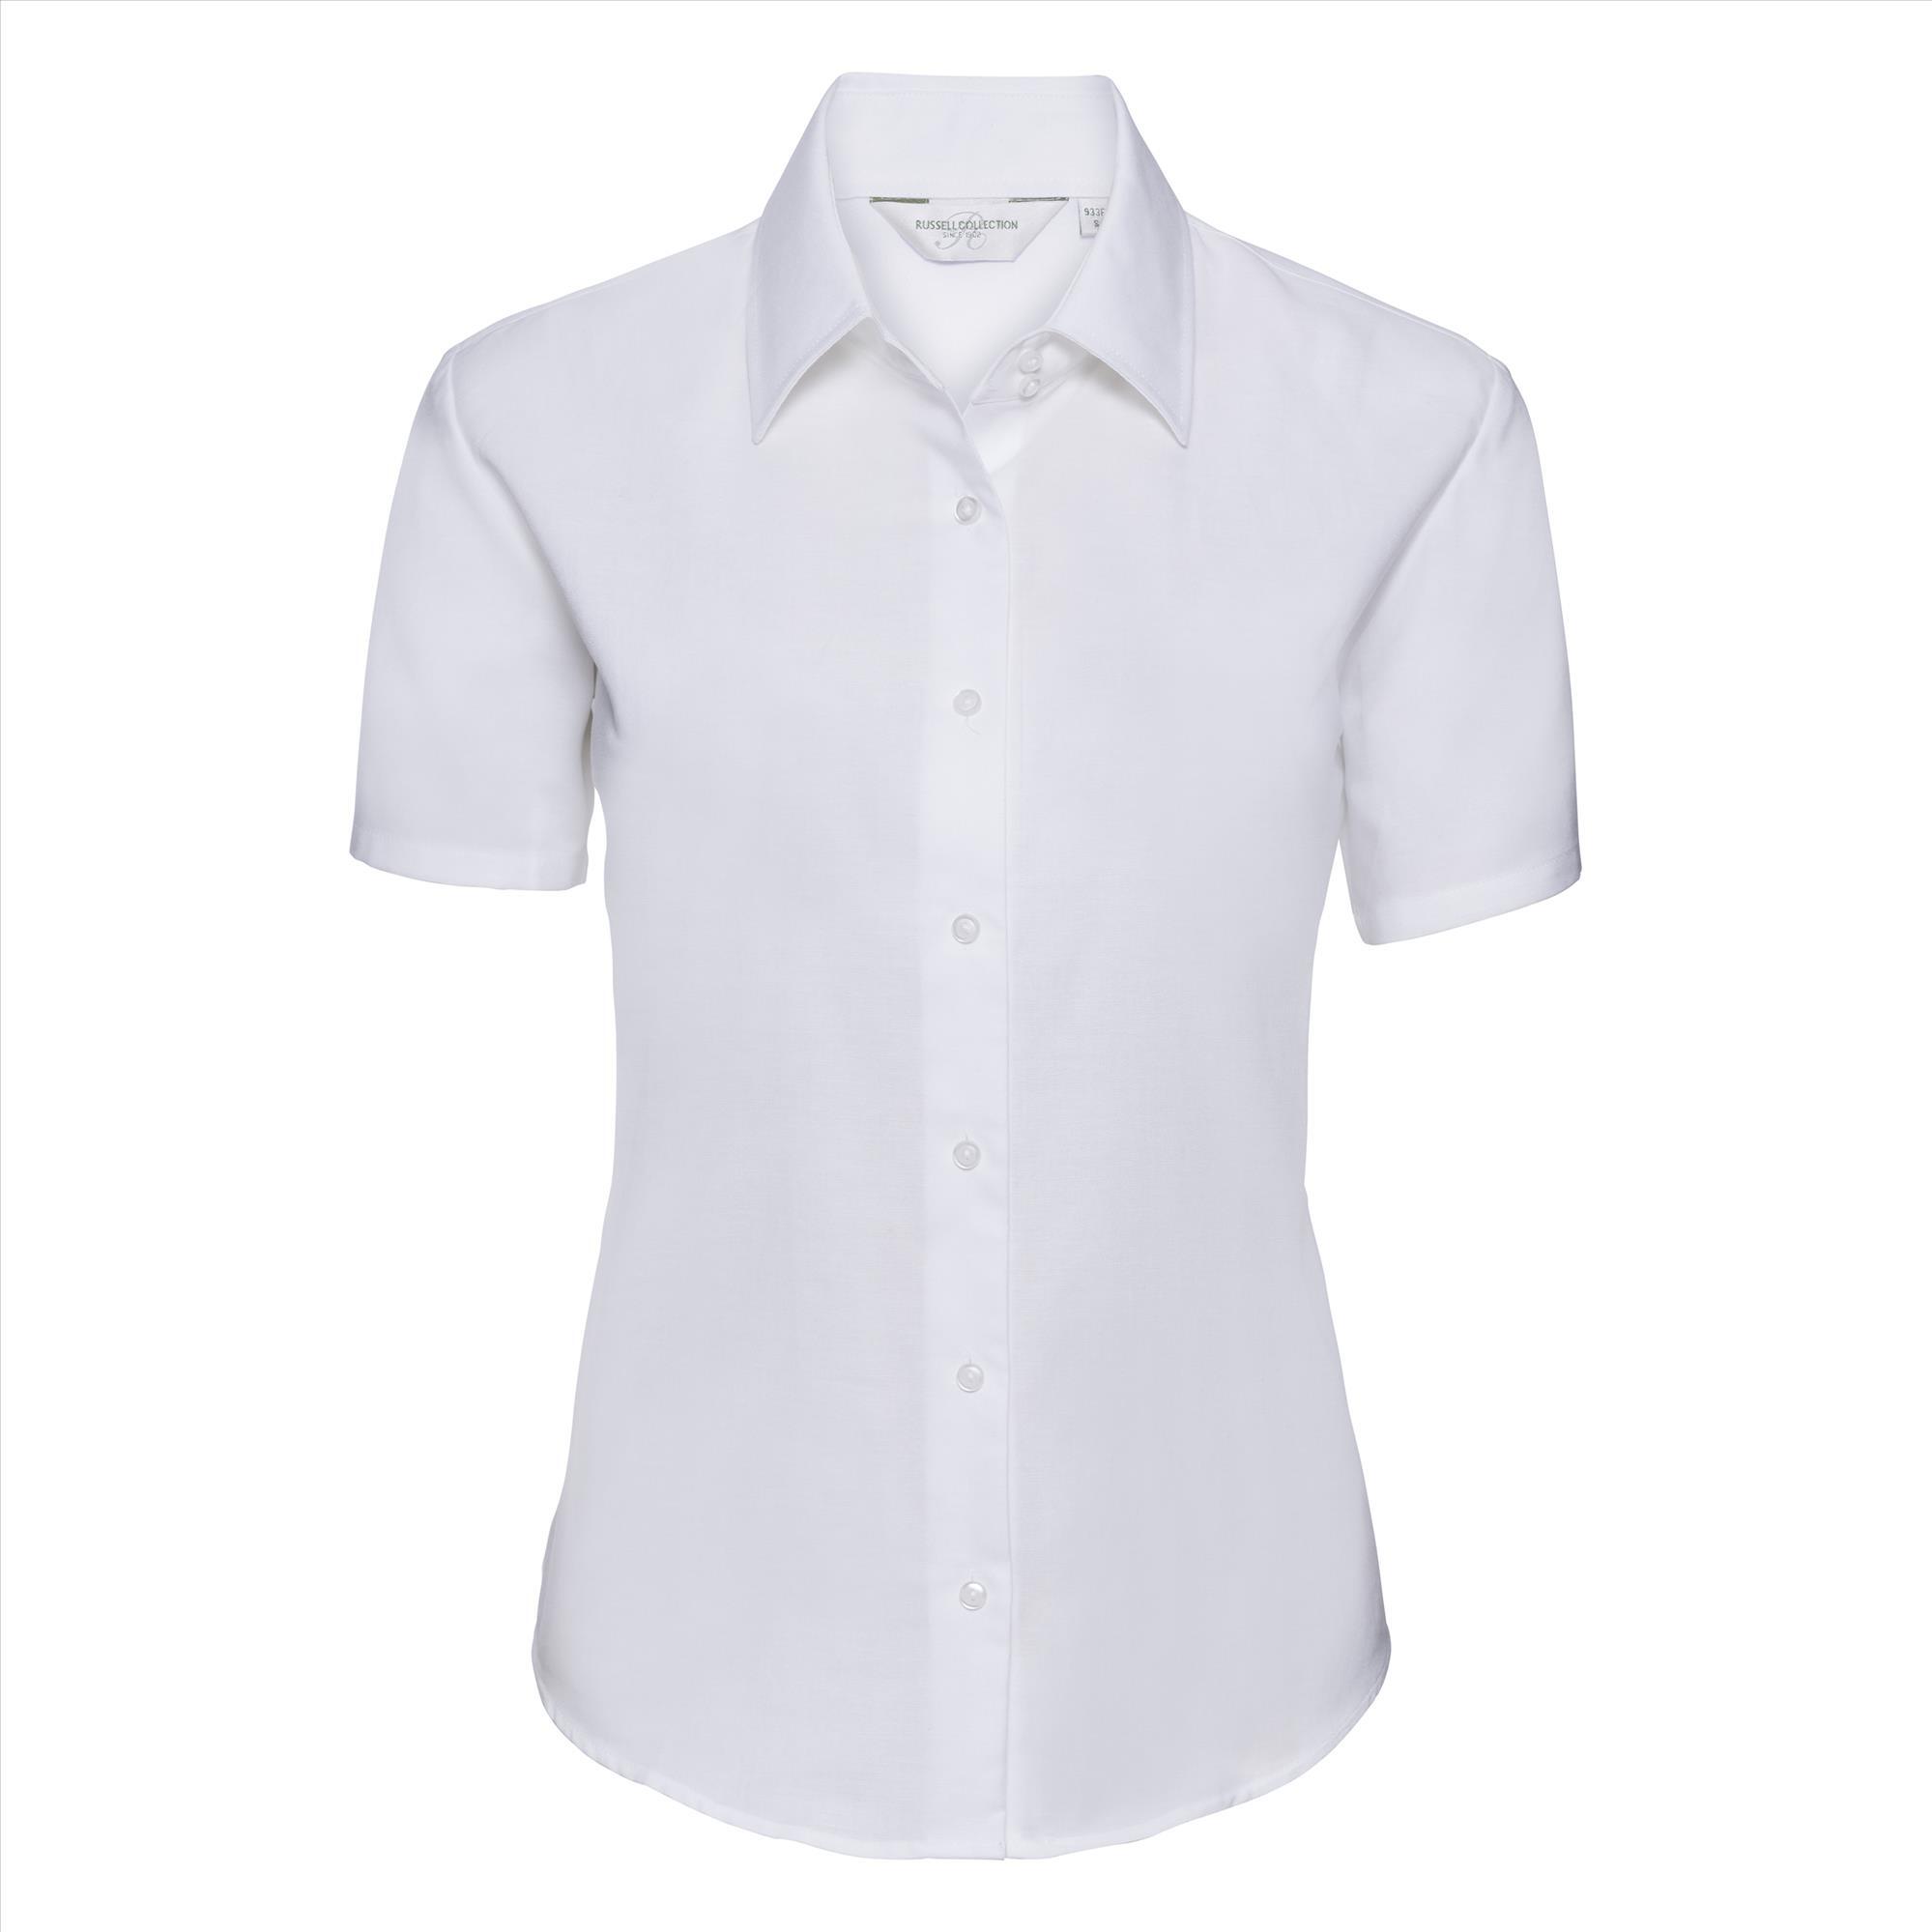 Getailleerde dames blouse wit te personaliseren met en bedrijfslogo